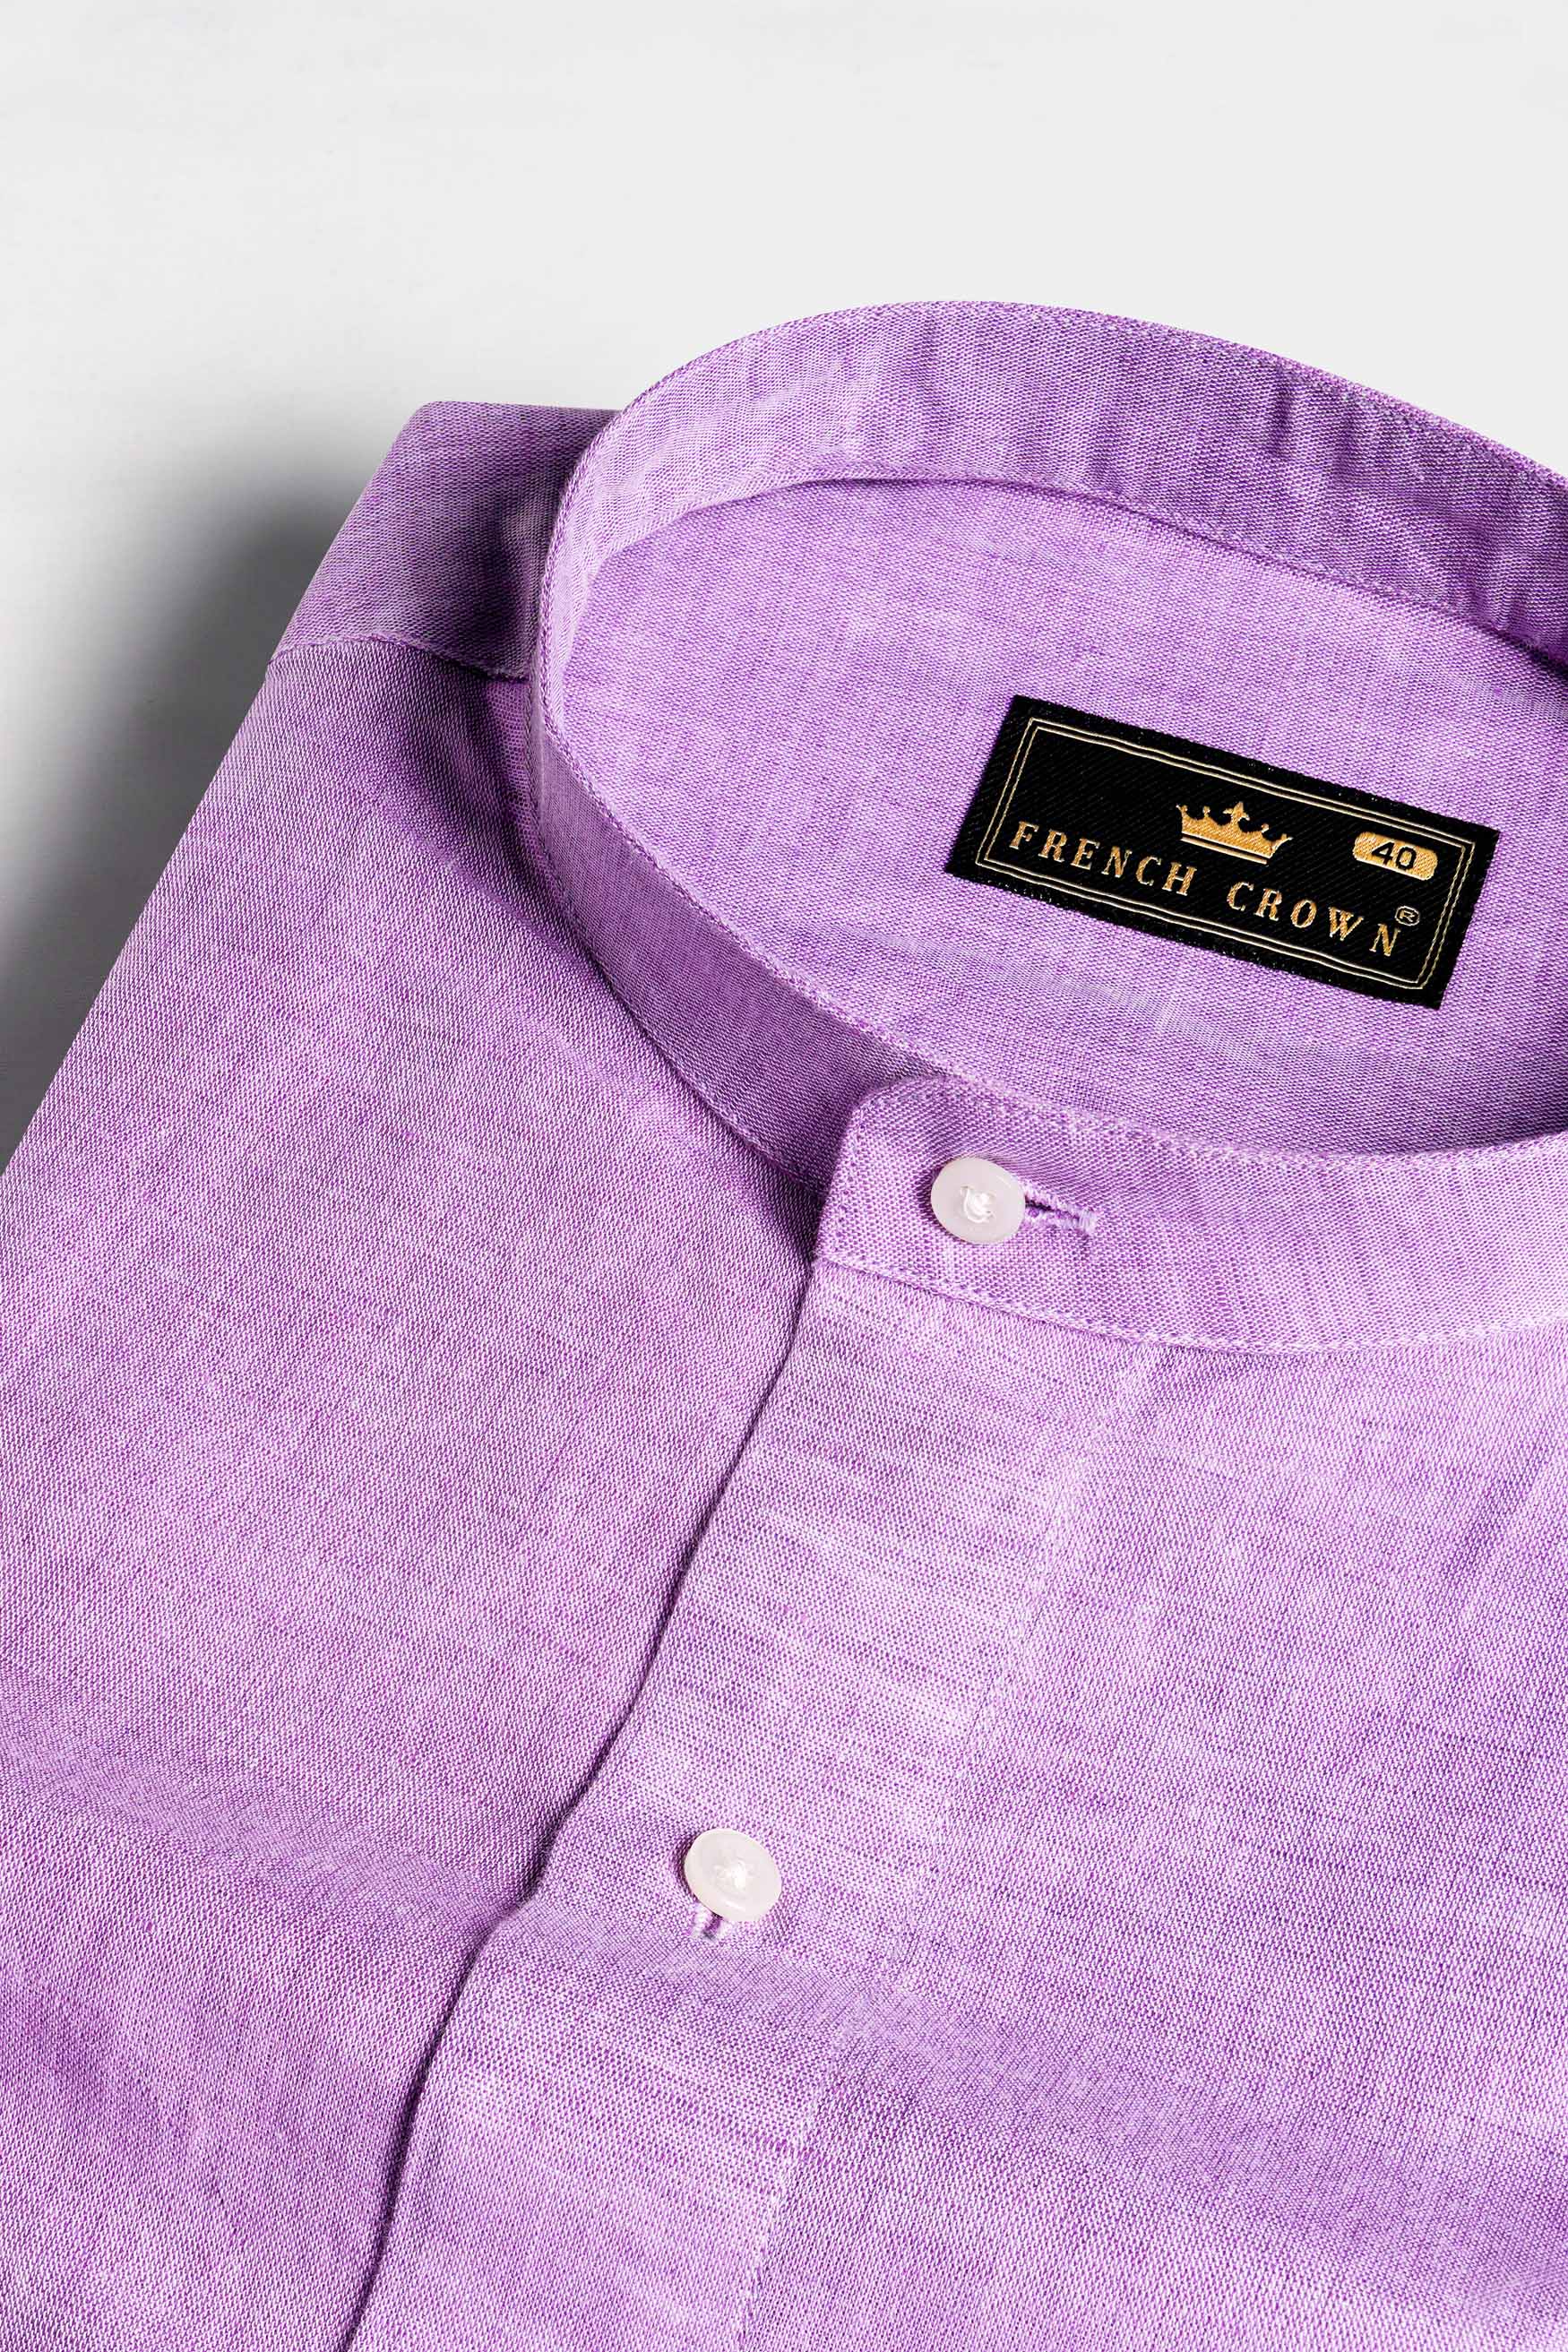 Plum Purple Luxurious Linen Shirt